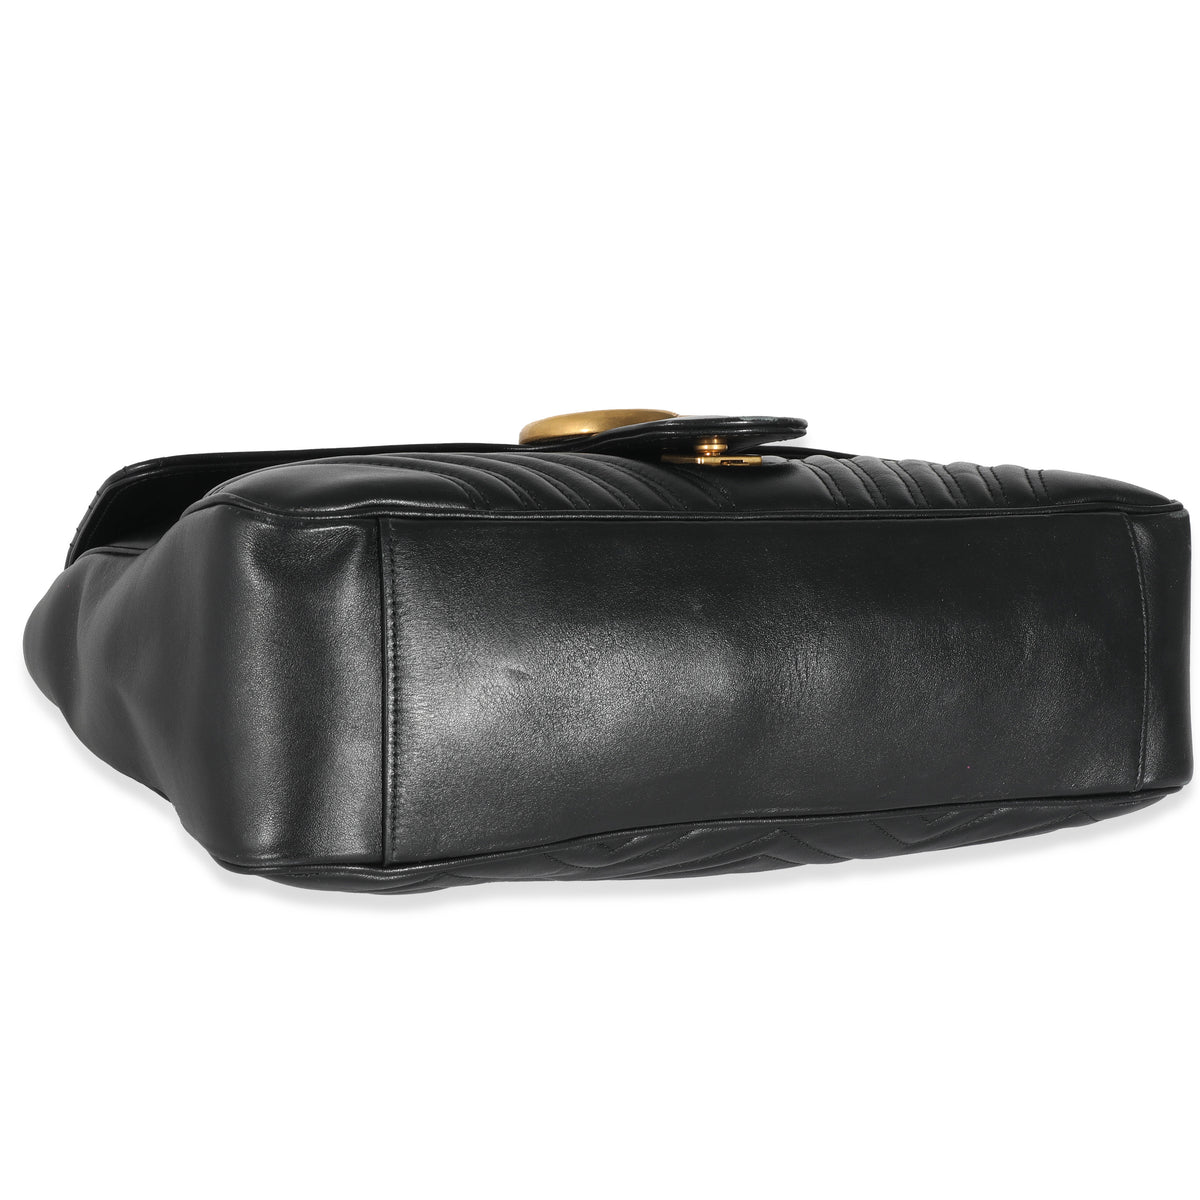 Gucci Black Matelassé Large GG Marmont Shoulder Bag